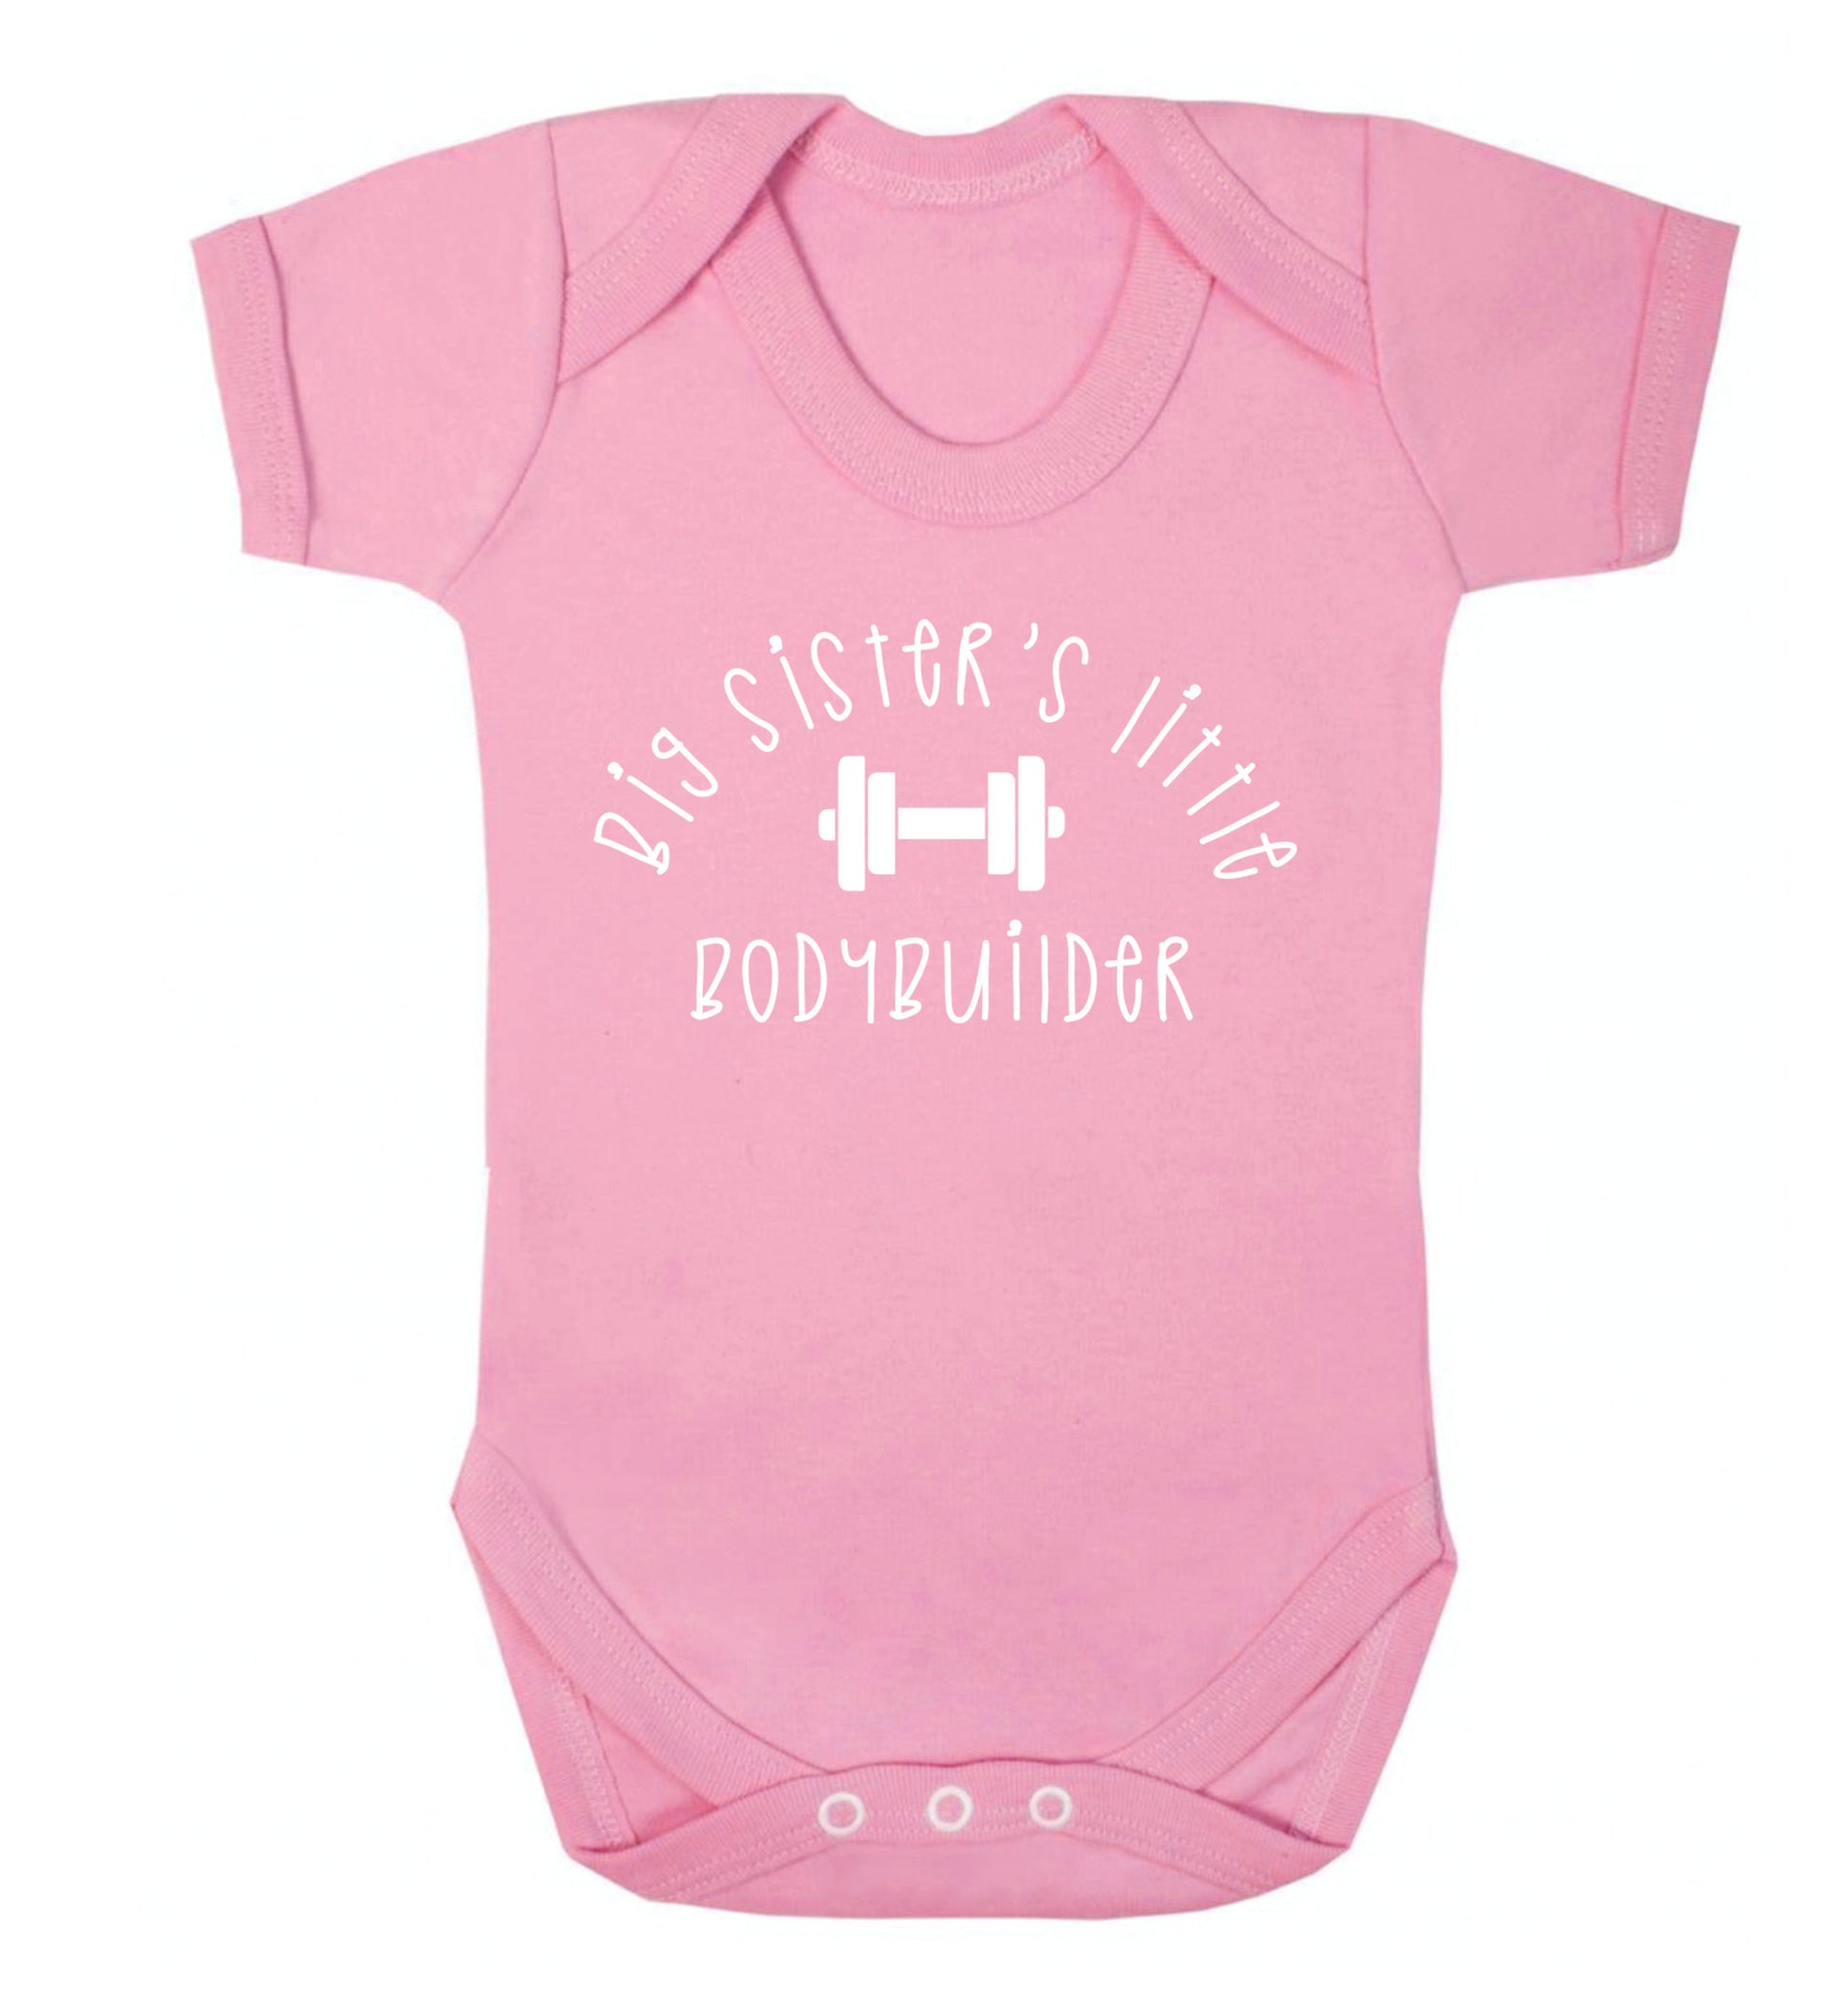 Big sister's little bodybuilder Baby Vest pale pink 18-24 months